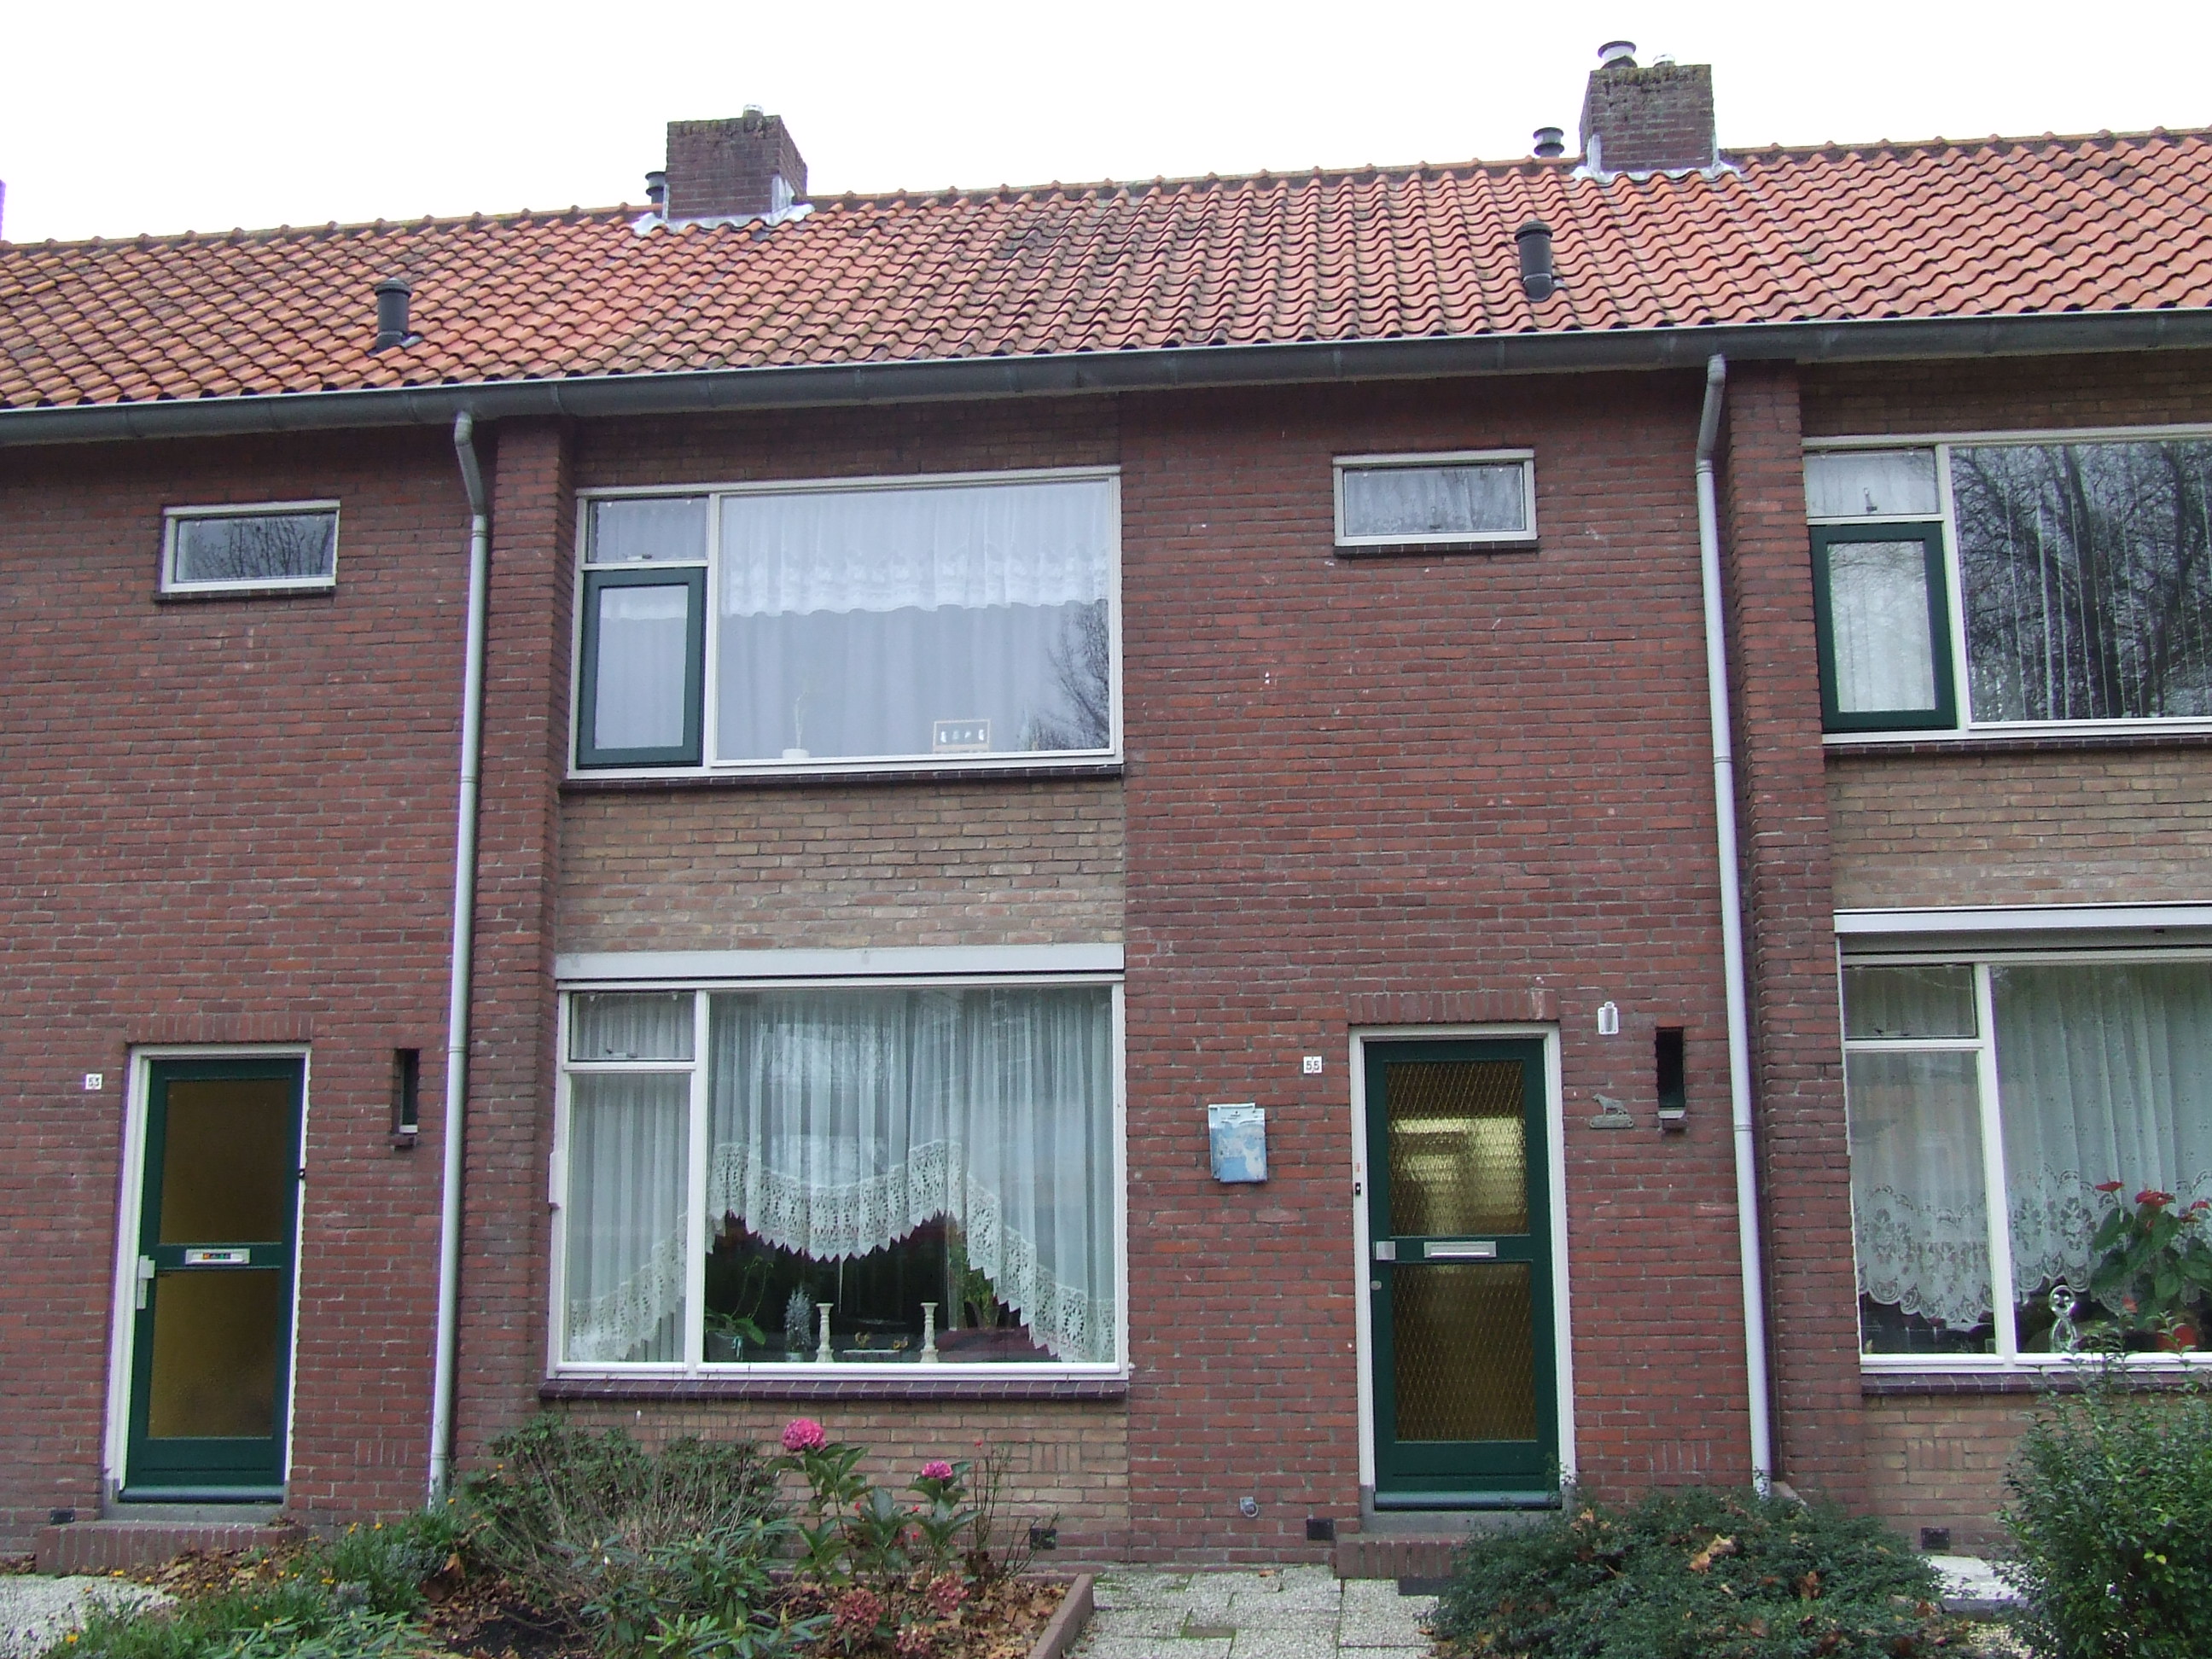 Doormanplein 4, 2161 TD Lisse, Nederland